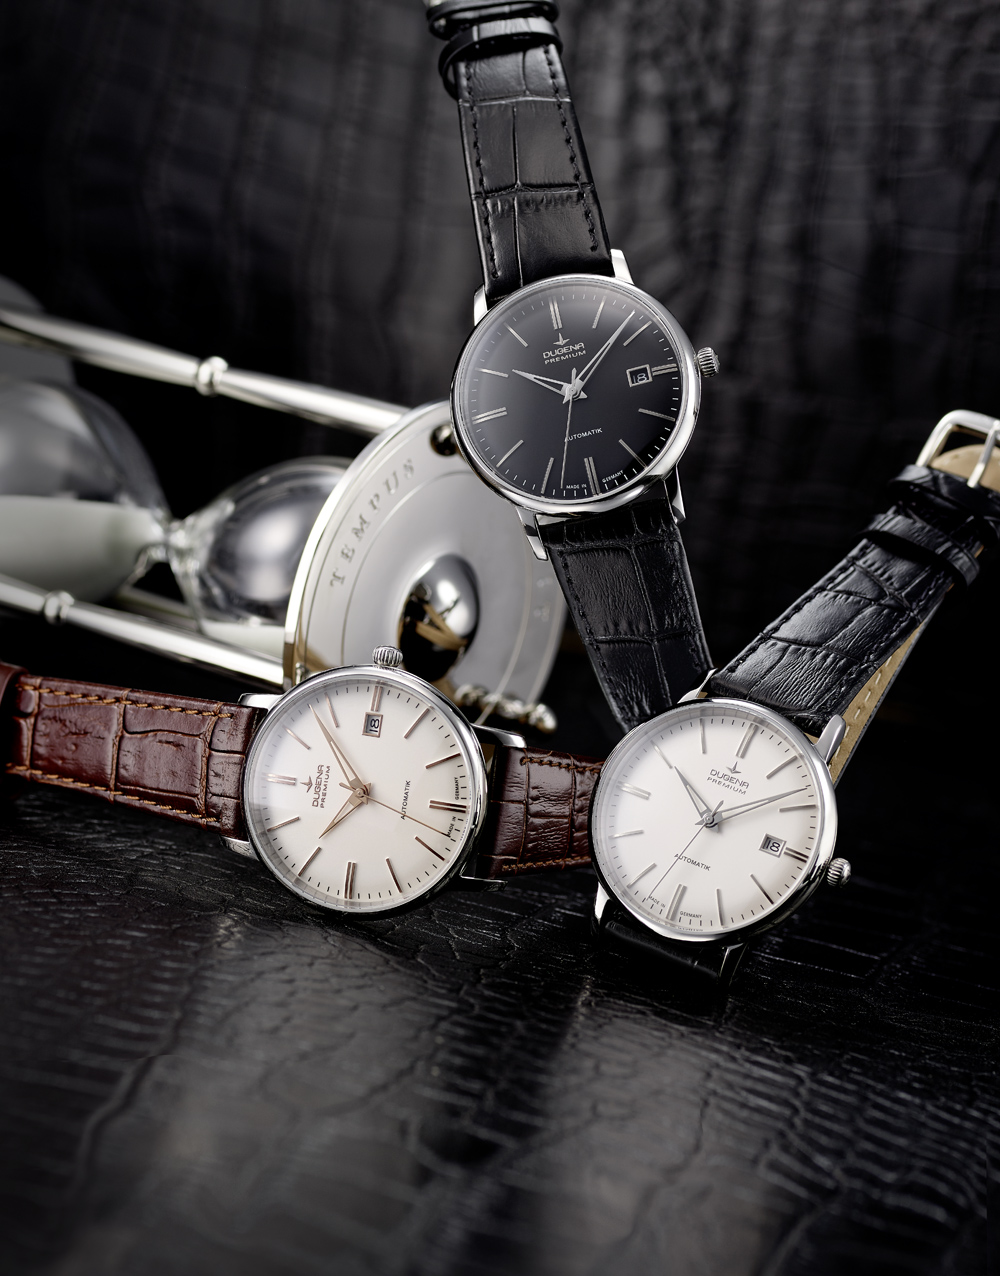 Dugena Premium – ManuFaktUhr – Uhren und Lebensart